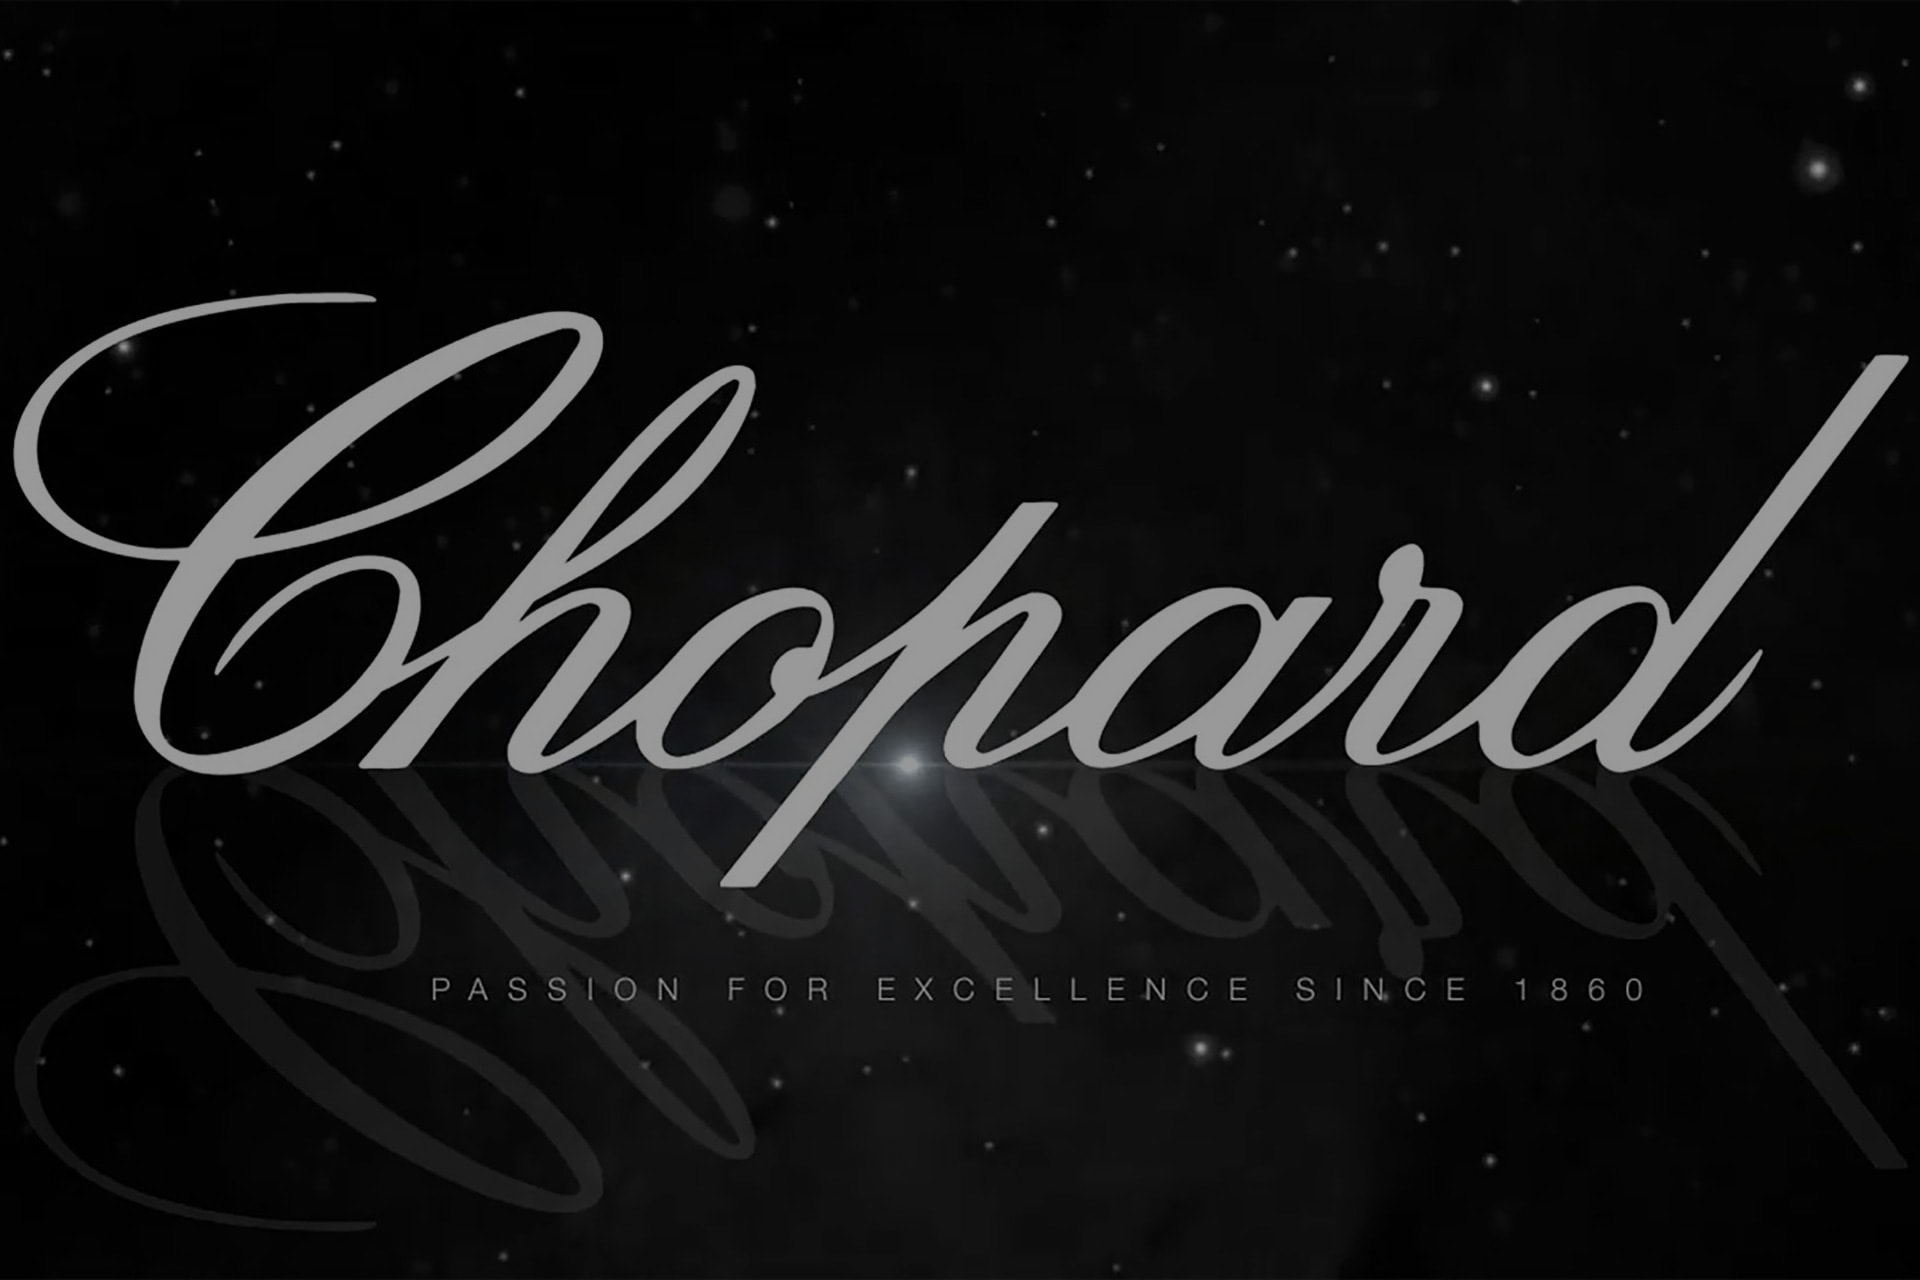 Logo Chopard animation